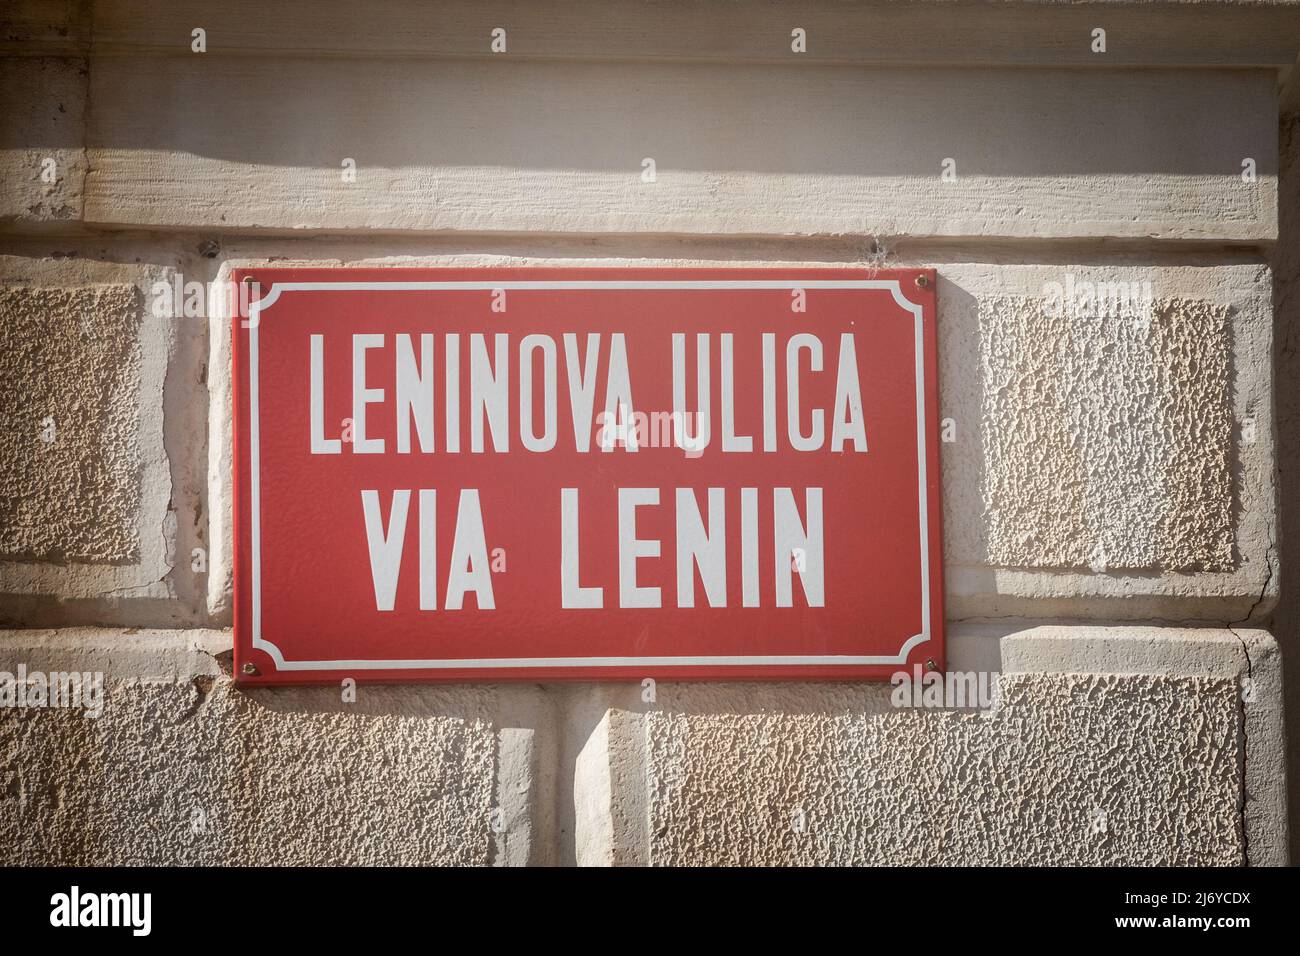 Immagine di un segno bilingue che indica via Lenin, sia in sloveno (Leninova Ulica), sia in via Lenin (in italiano), obbedendo alle regole del bilinguismo Foto Stock